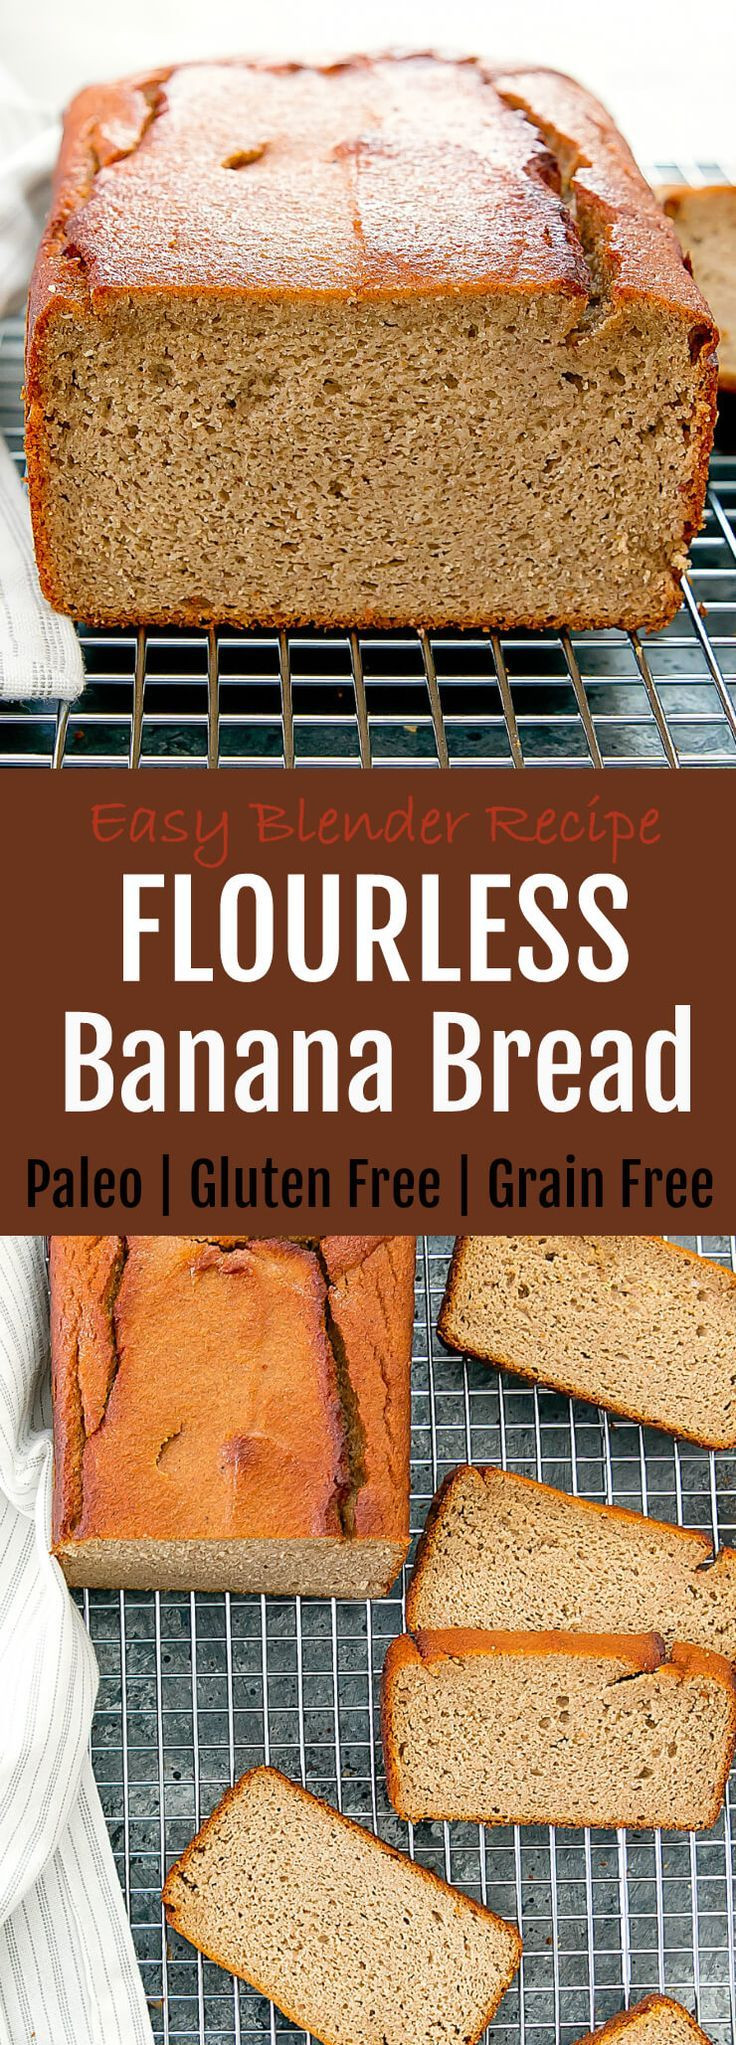 Keto Banana Bread Flourless
 Flourless Banana Bread Recipe